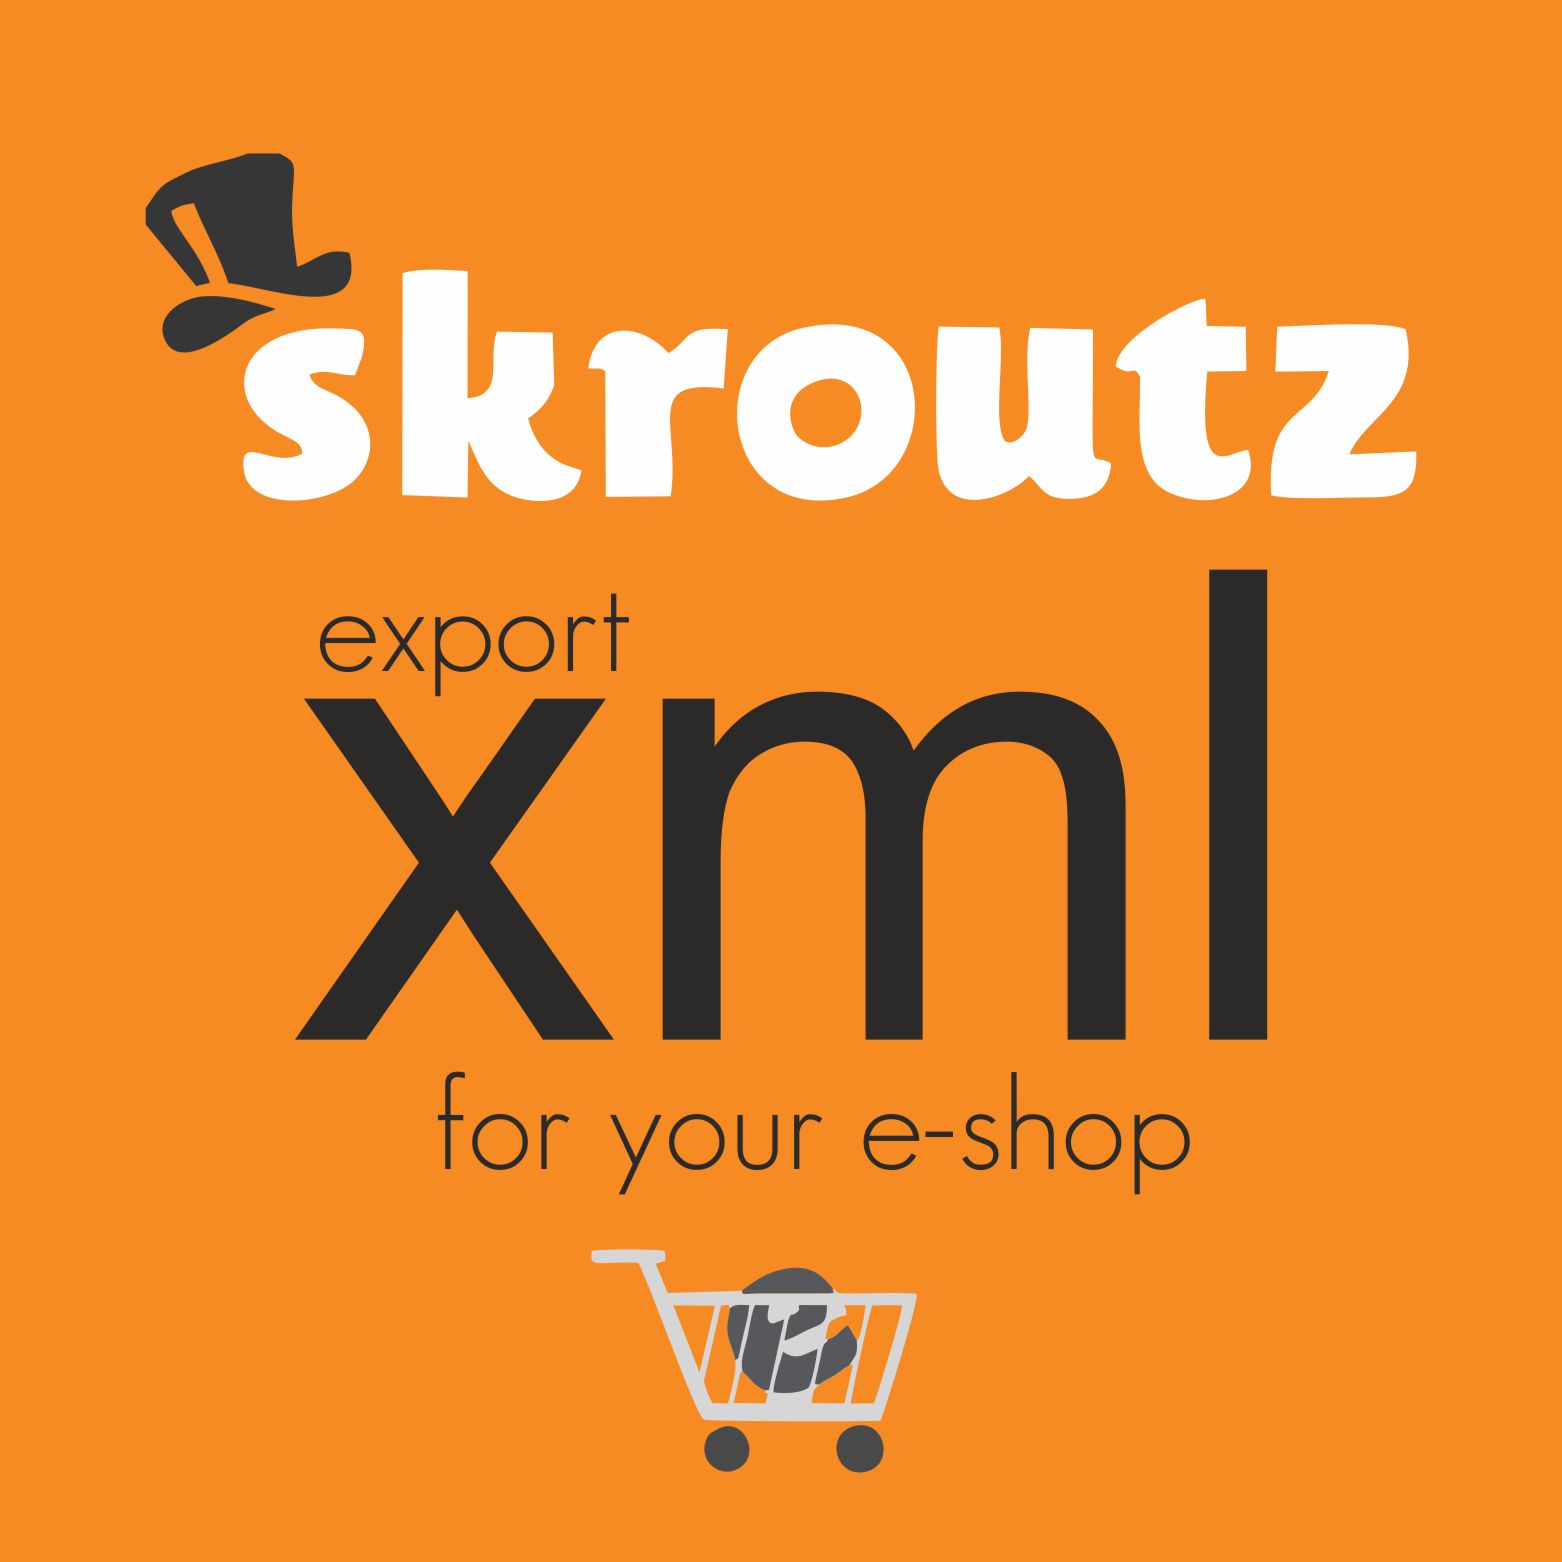 Δημιουργία xml αρχείου του eshop σας με τις προδιαγραφές του skroutz